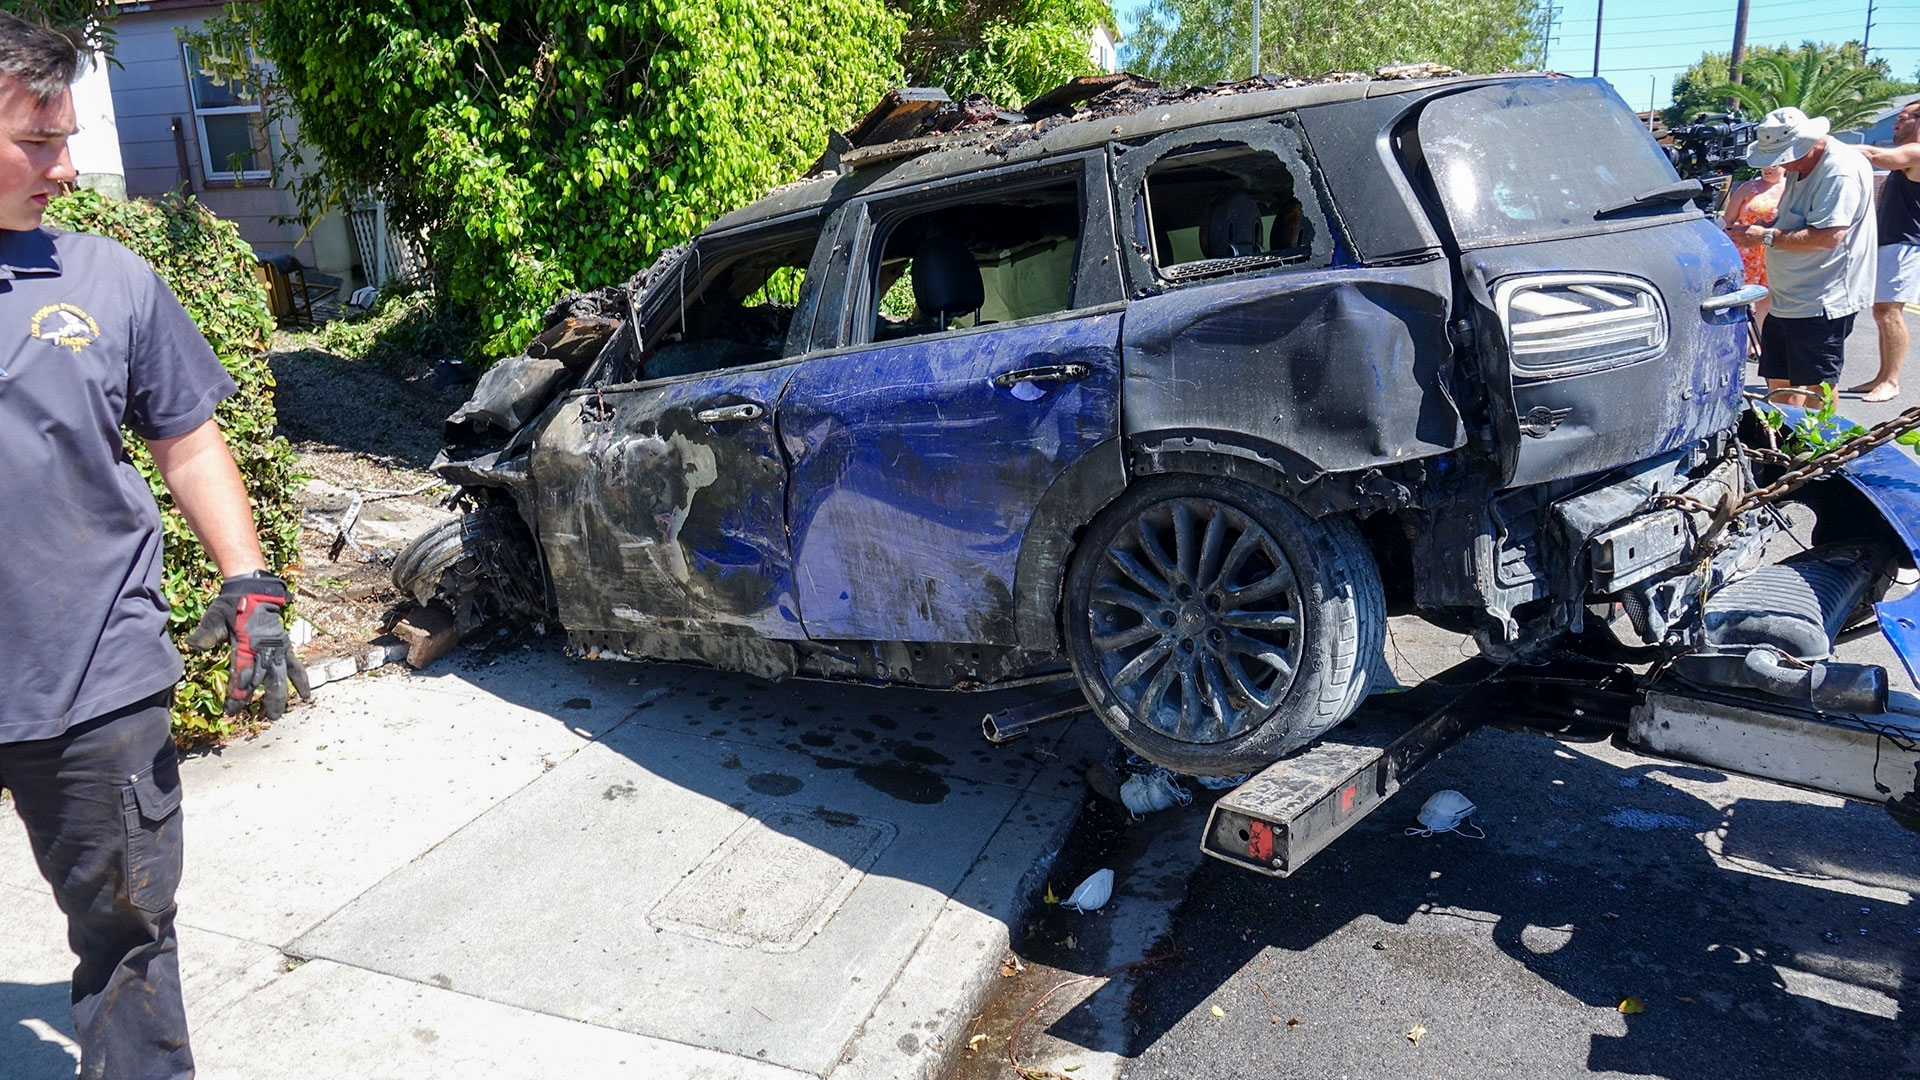 La actriz fue ingresada en el Hospital West Hills el viernes 5 de agosto, cuando su Mini Cooper azul se estrelló contra una vivienda en la zona de Mar Vista y el vehículo acabó envuelto en llamas (Grosby)